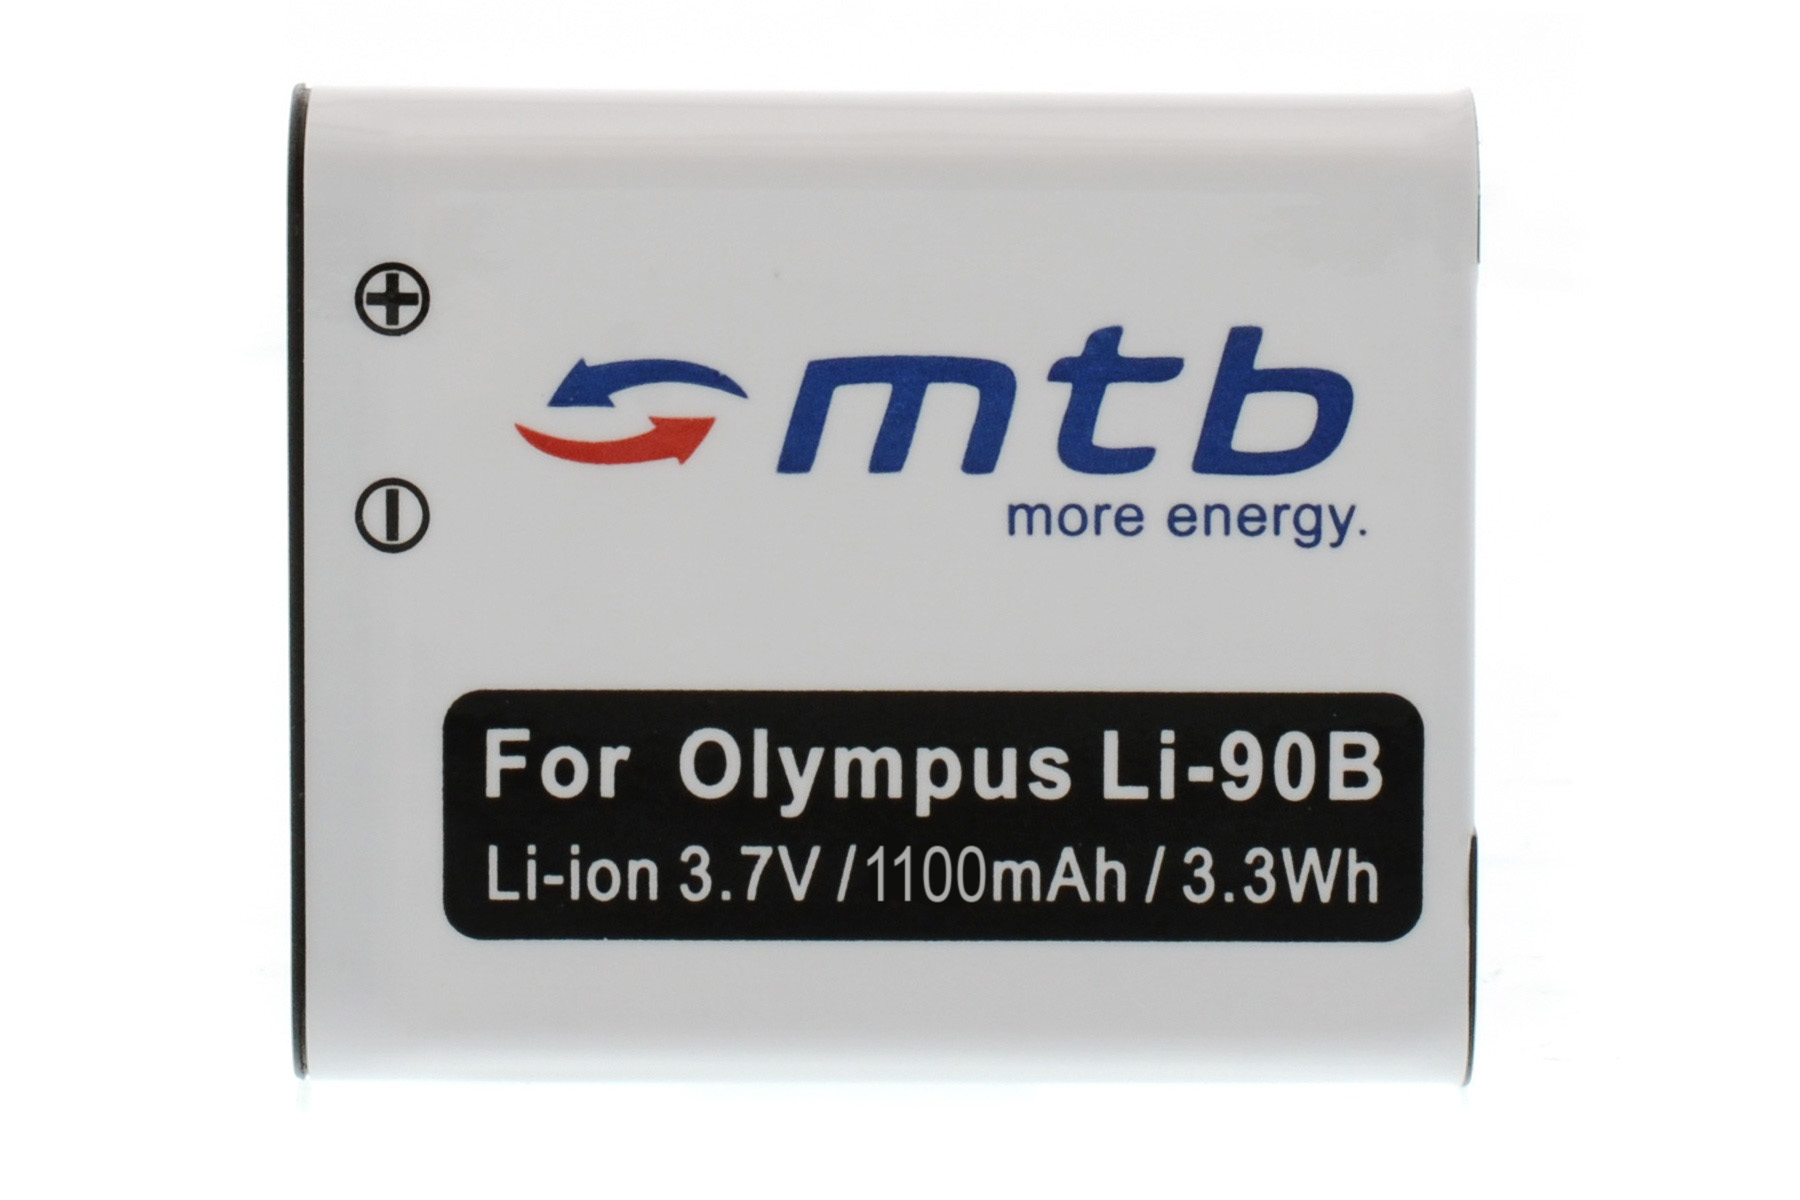 mAh ENERGY MTB MORE 1100 Li-Ion, Akku, Li-90b 2x BAT-360